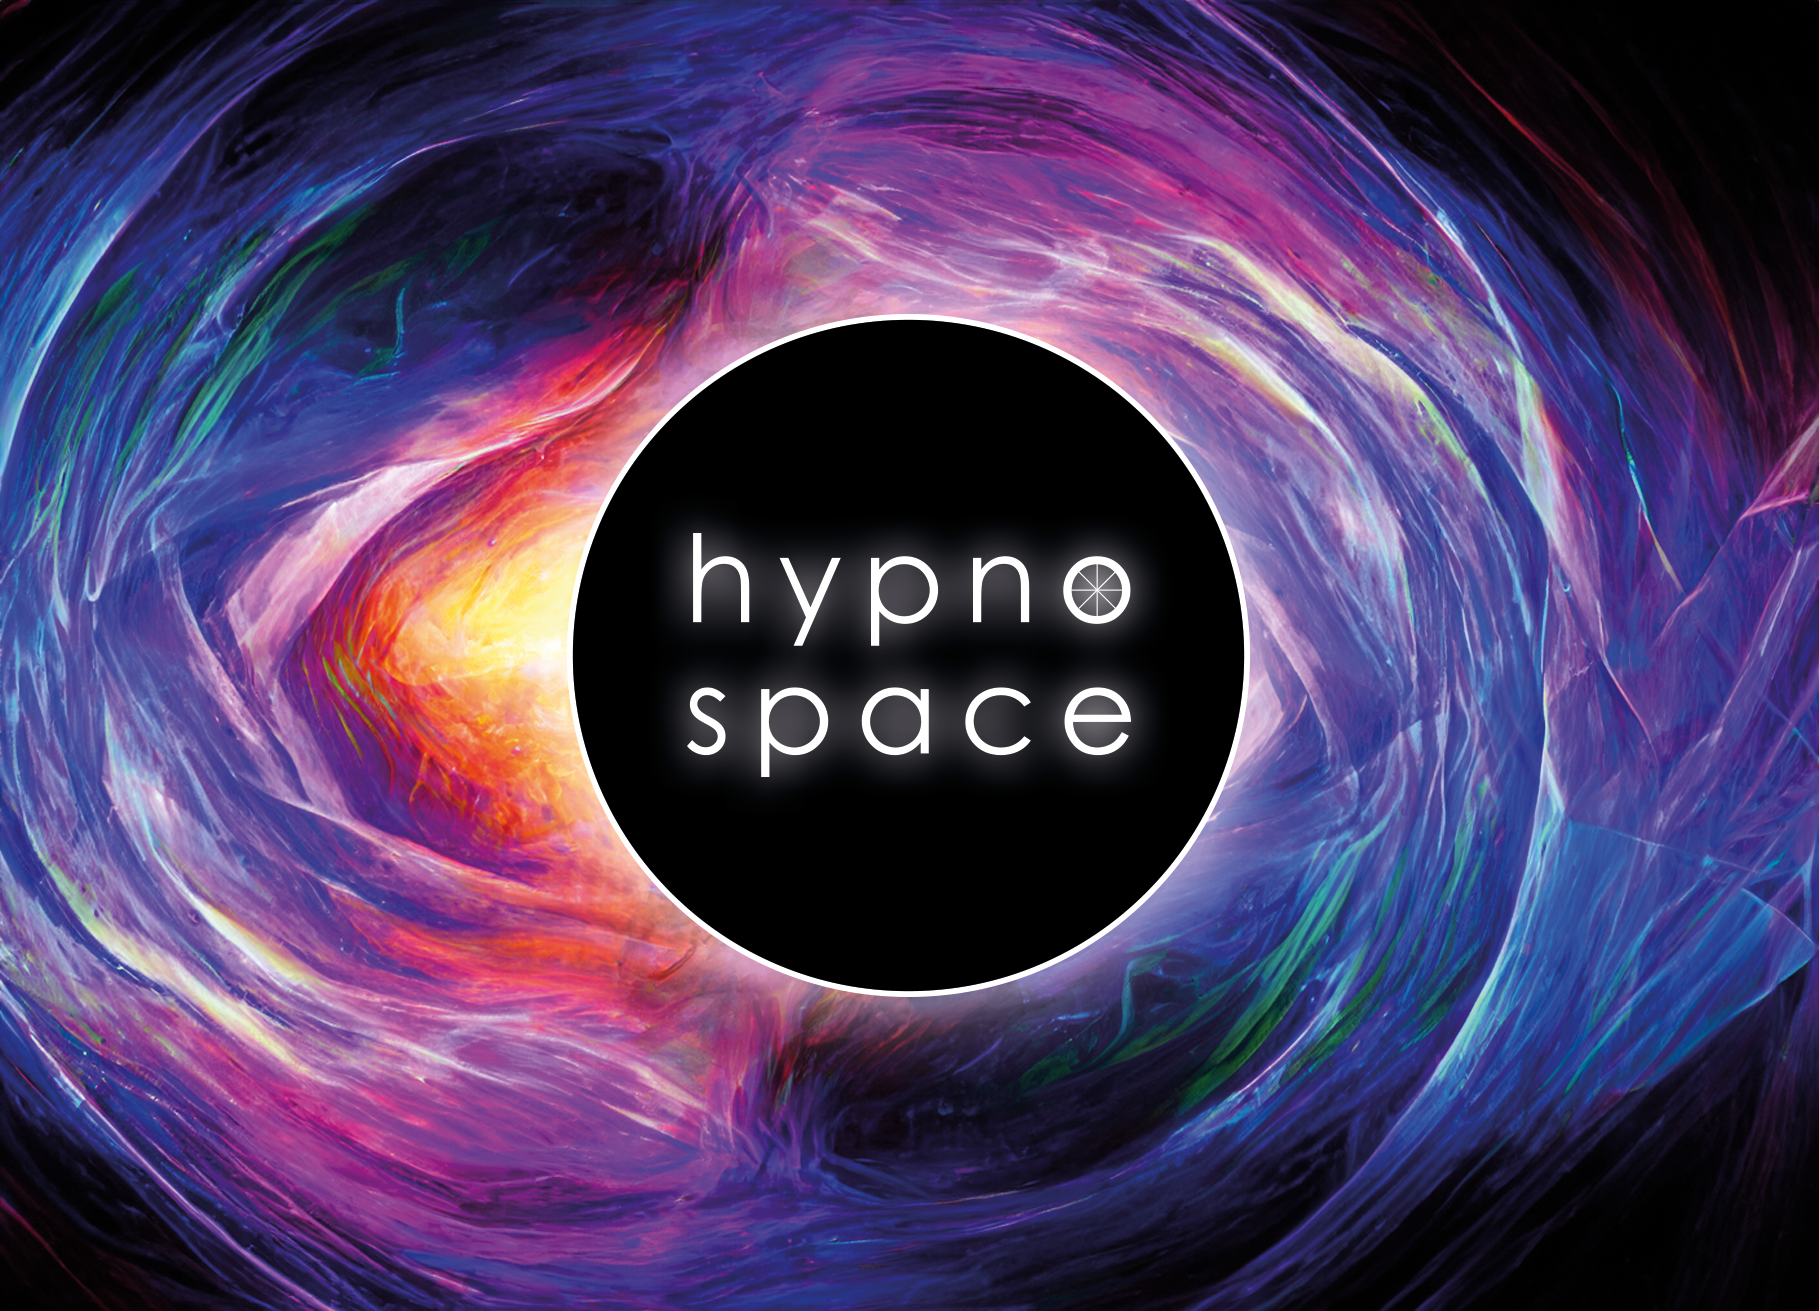 Manifestations-Hypnose: Verbinde dich mit deiner Berufung - hypnospace - Hypnose in Augsburg